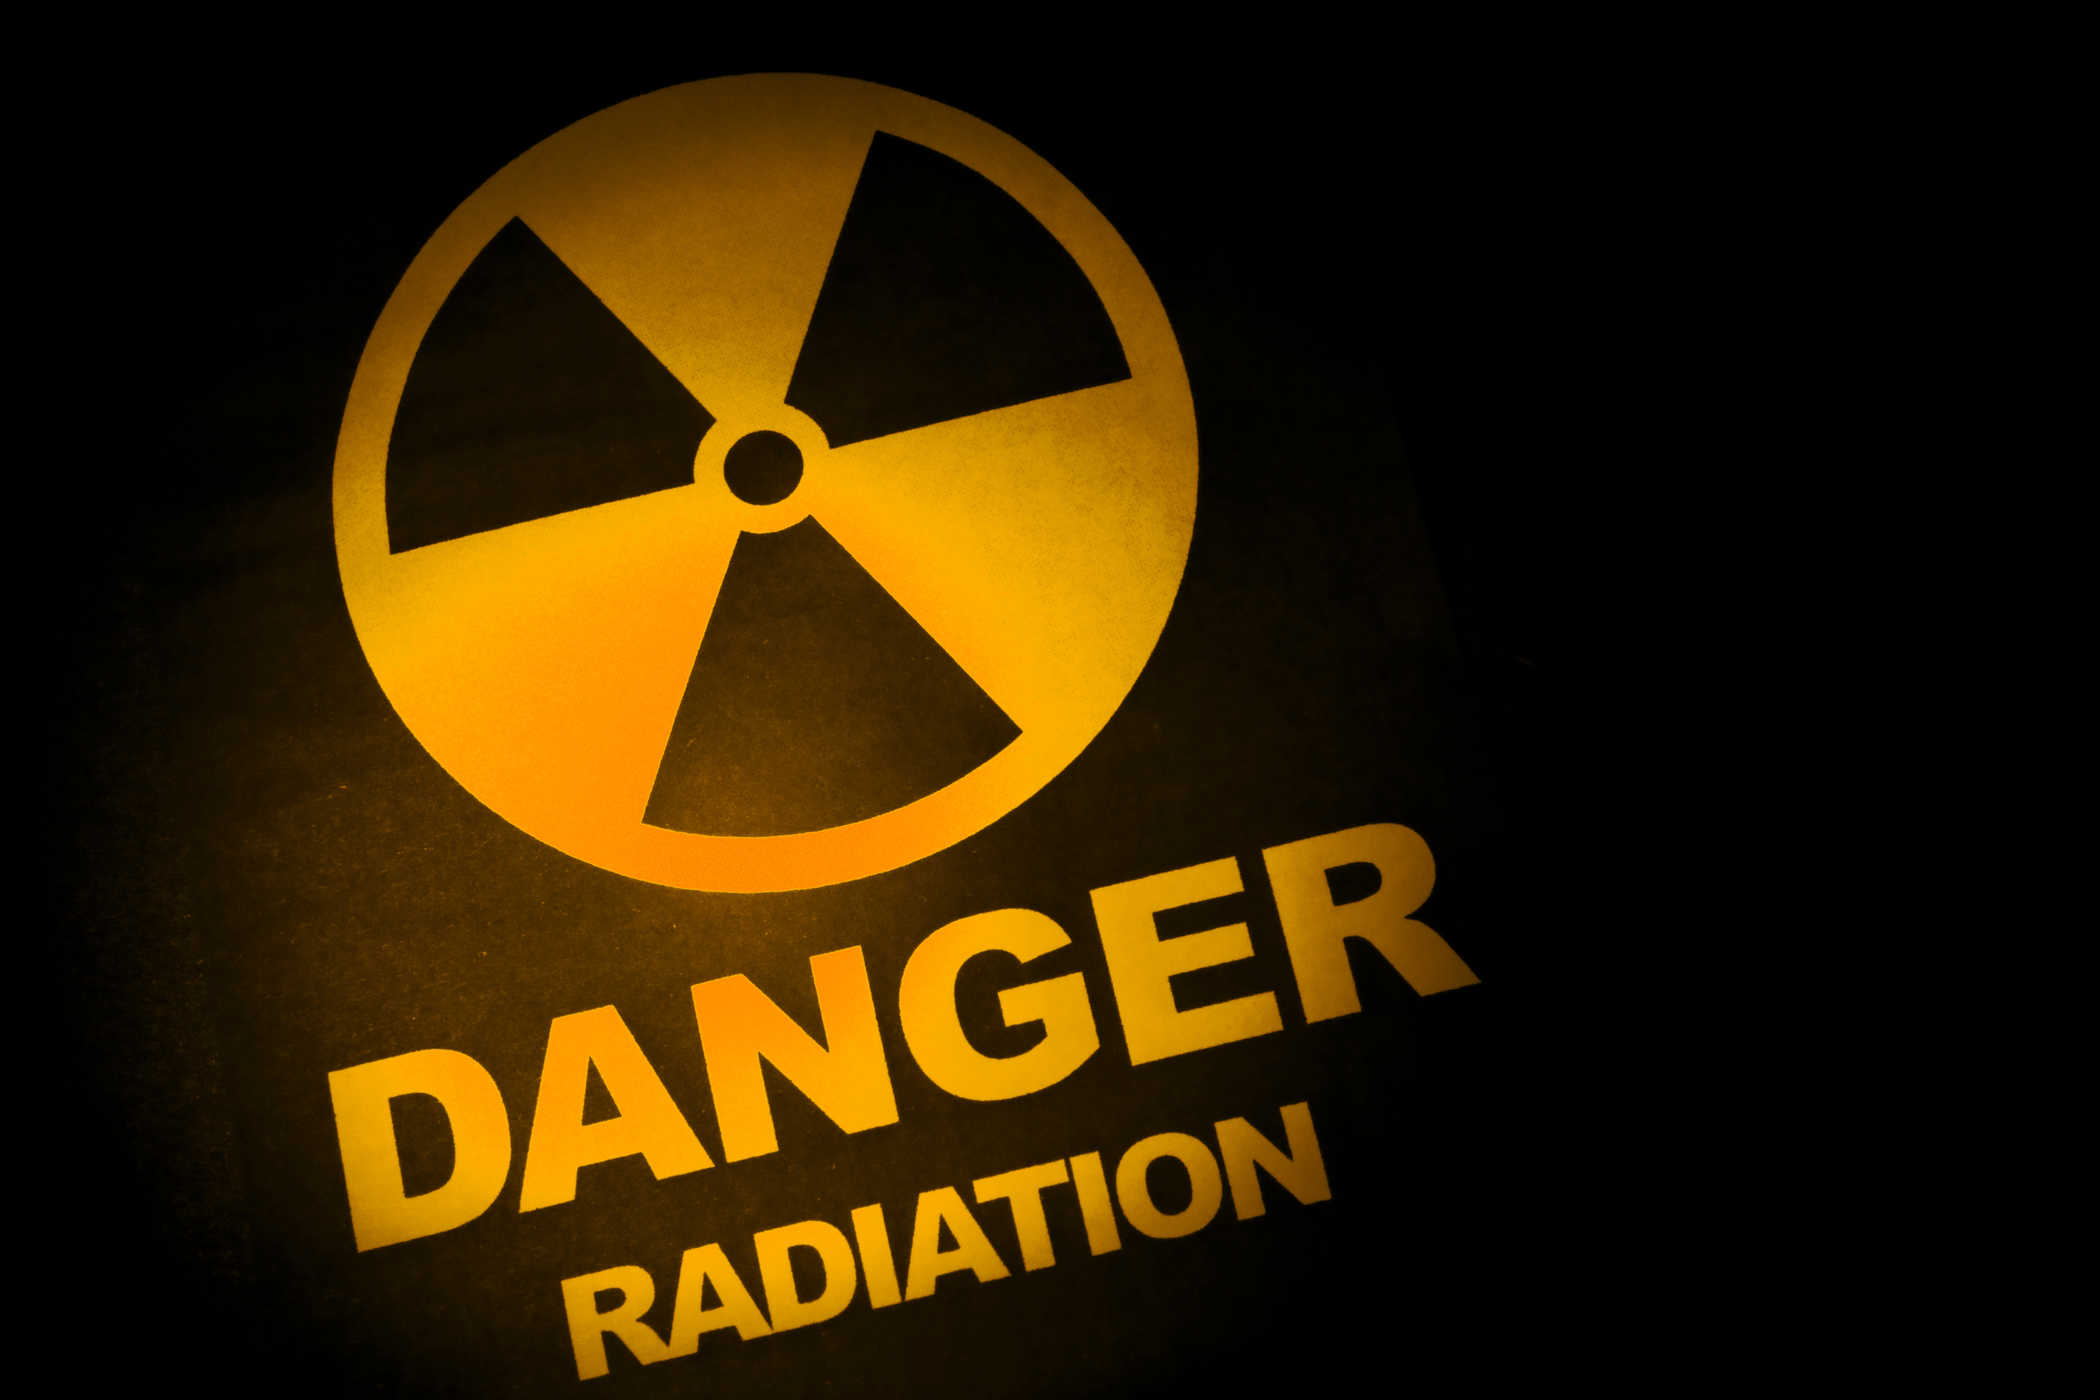 Este es el peligro de la radiación para el cuerpo humano